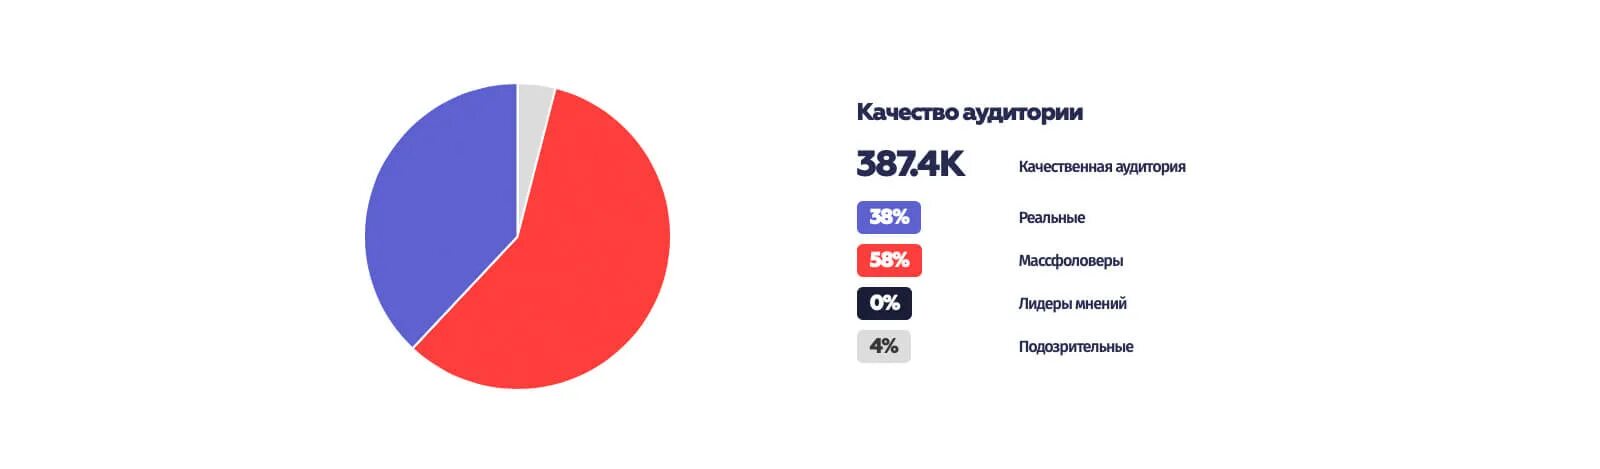 Статистика блоггеров в России ютуб 2023 год. Статистика блогеров